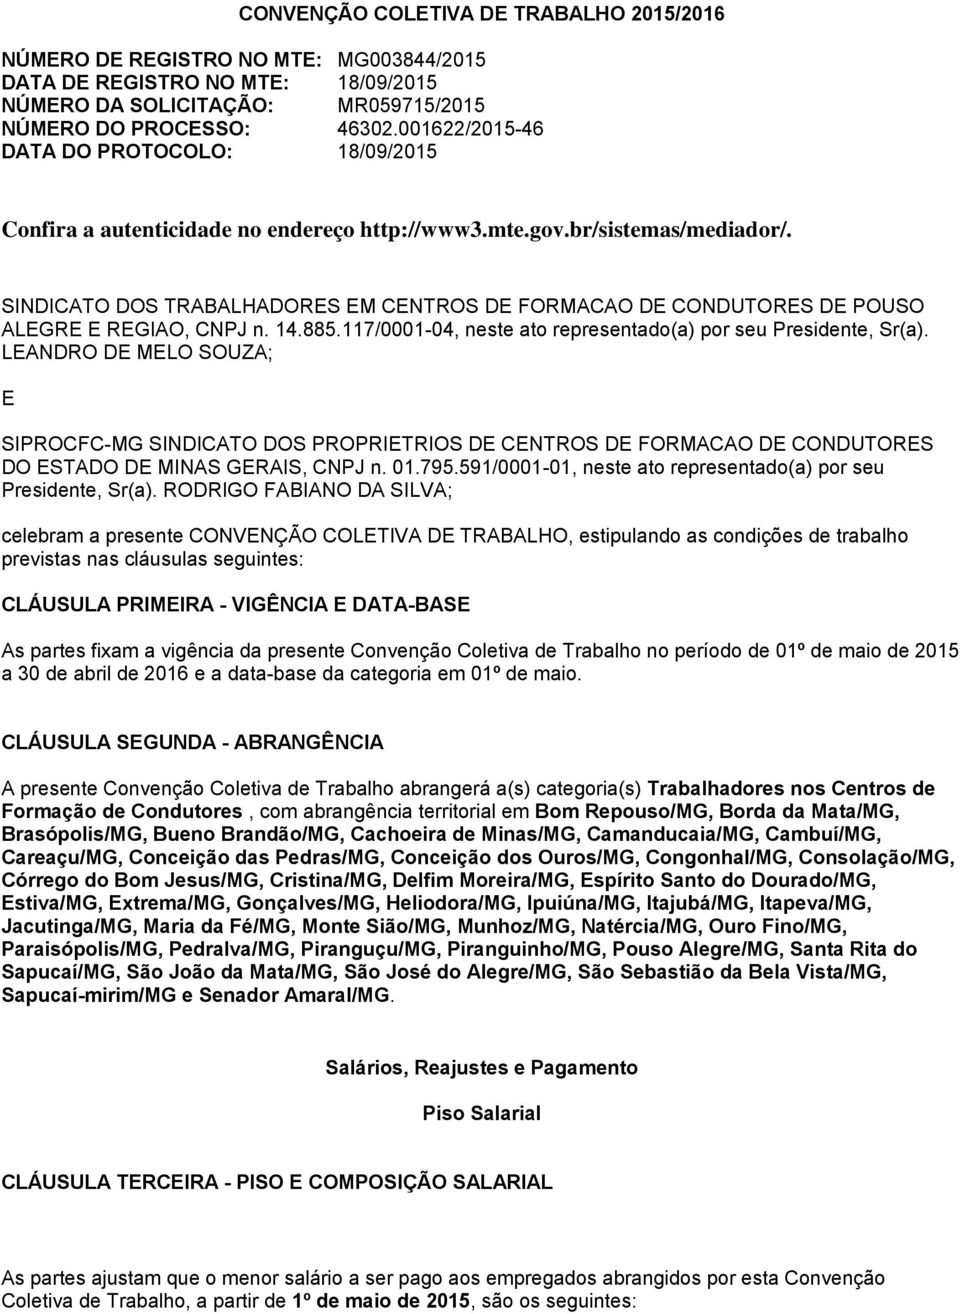 SINDICATO DOS TRABALHADORES EM CENTROS DE FORMACAO DE CONDUTORES DE POUSO ALEGRE E REGIAO, CNPJ n. 14.885.117/0001-04, neste ato representado(a) por seu Presidente, Sr(a).